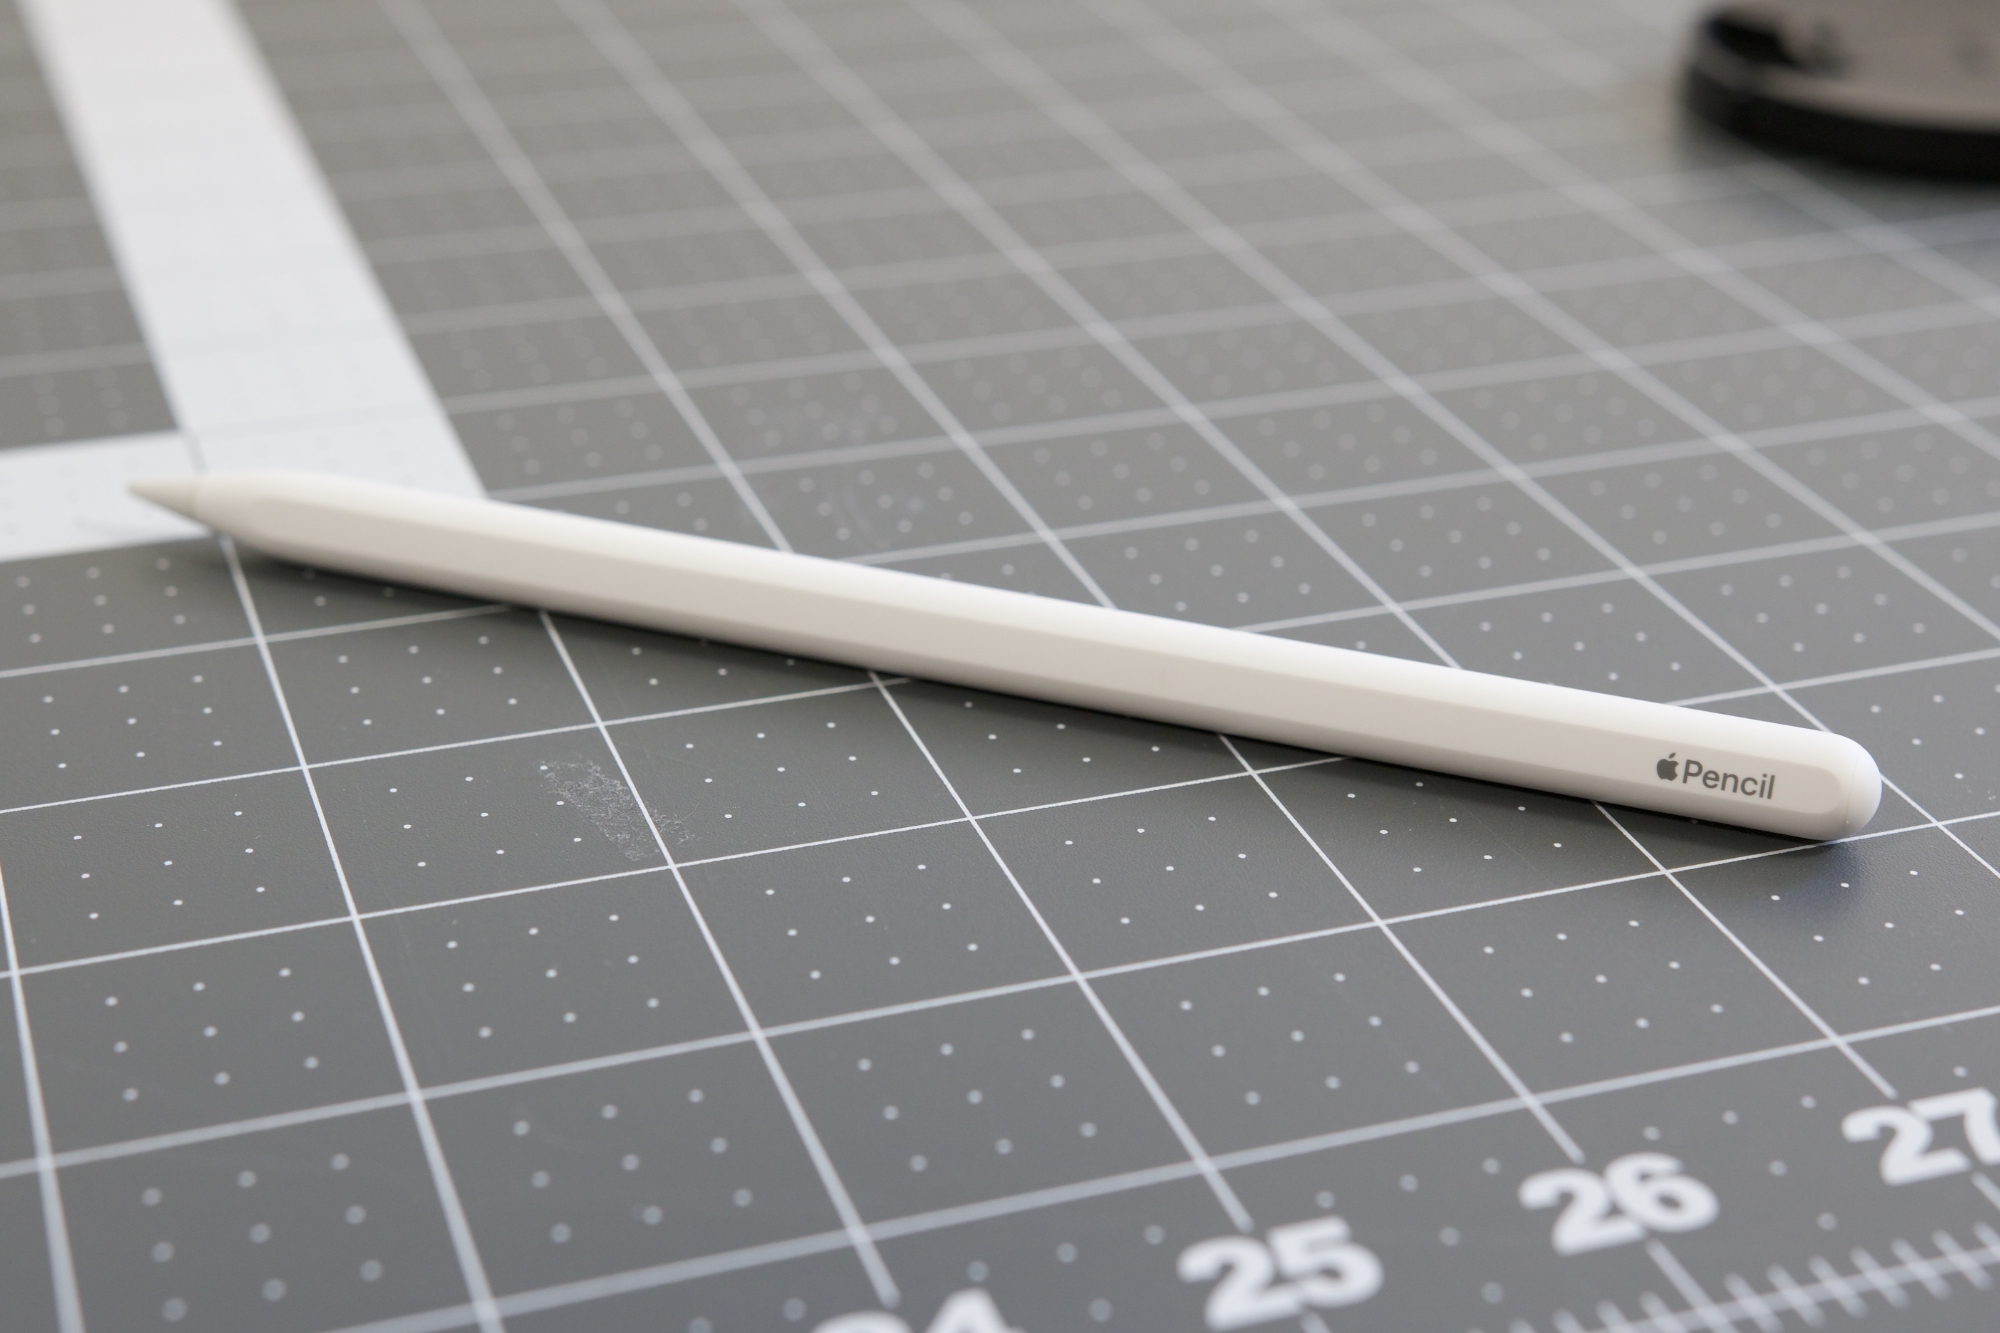 El Apple Pencil de 2ª generación sobre una mesa.